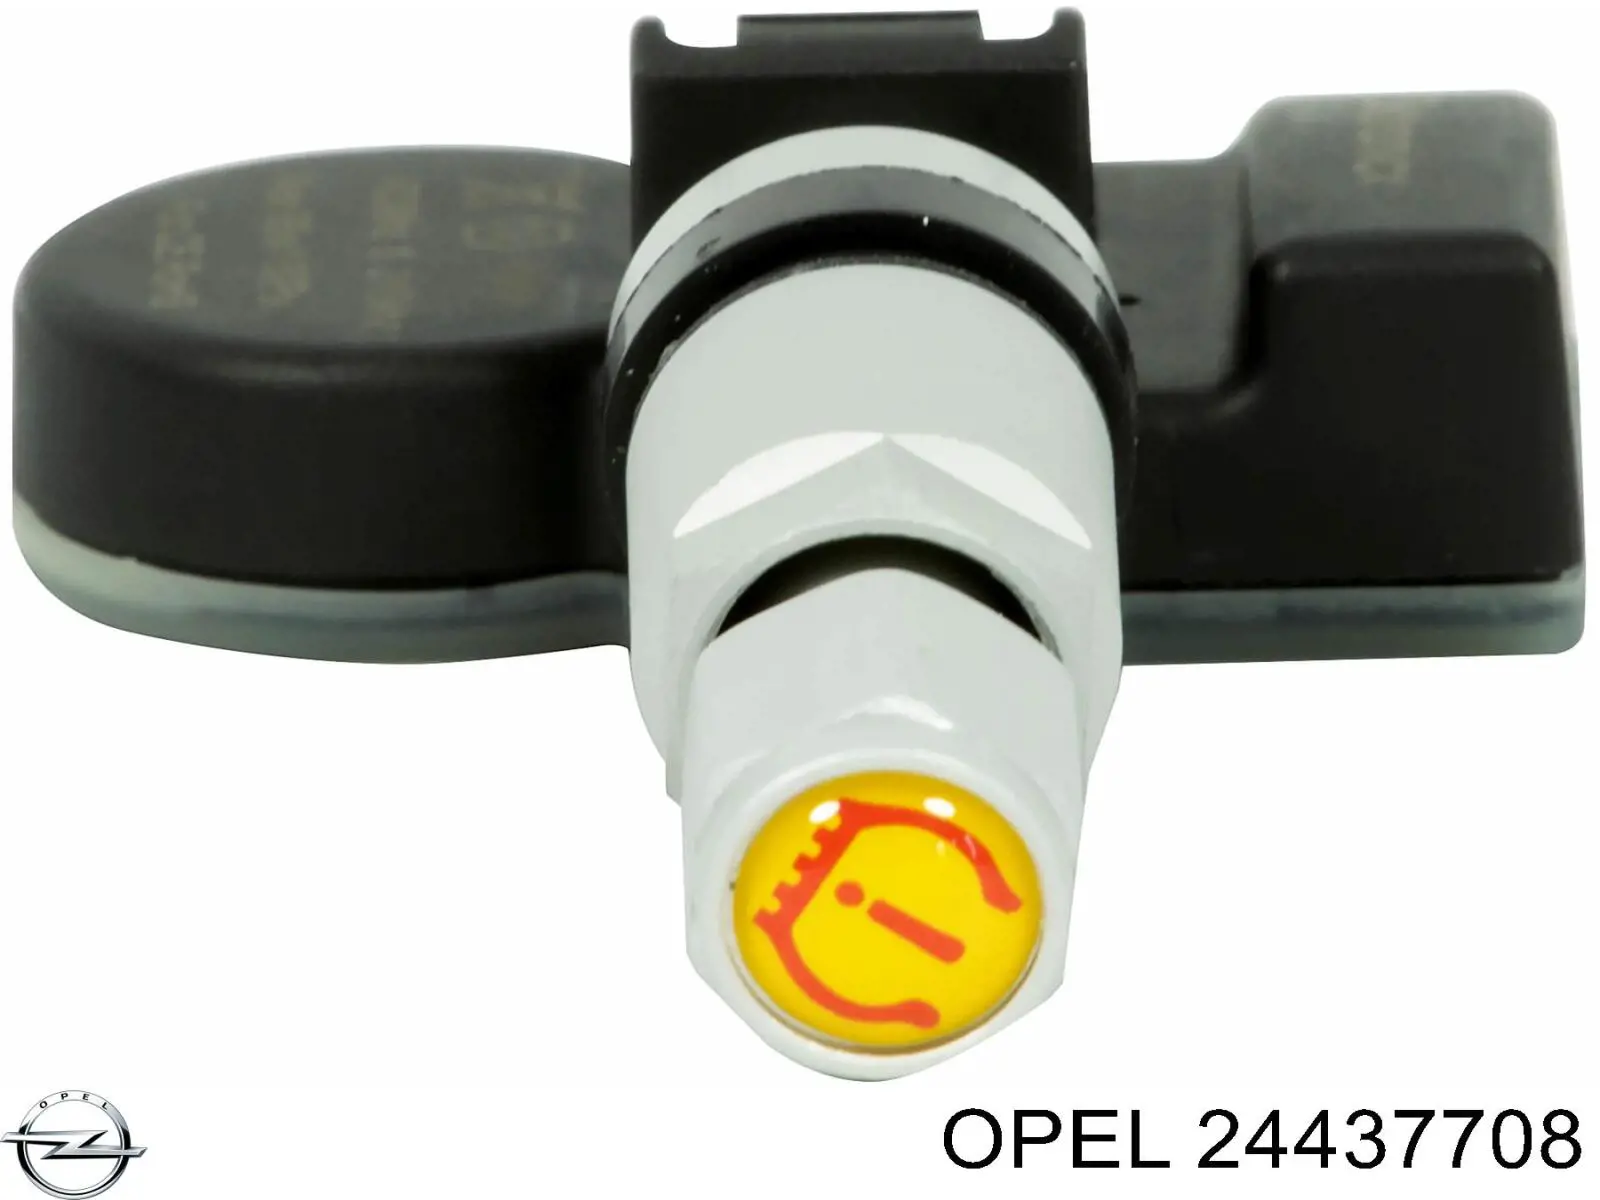 24437708 Opel sensor de pressão de ar nos pneus